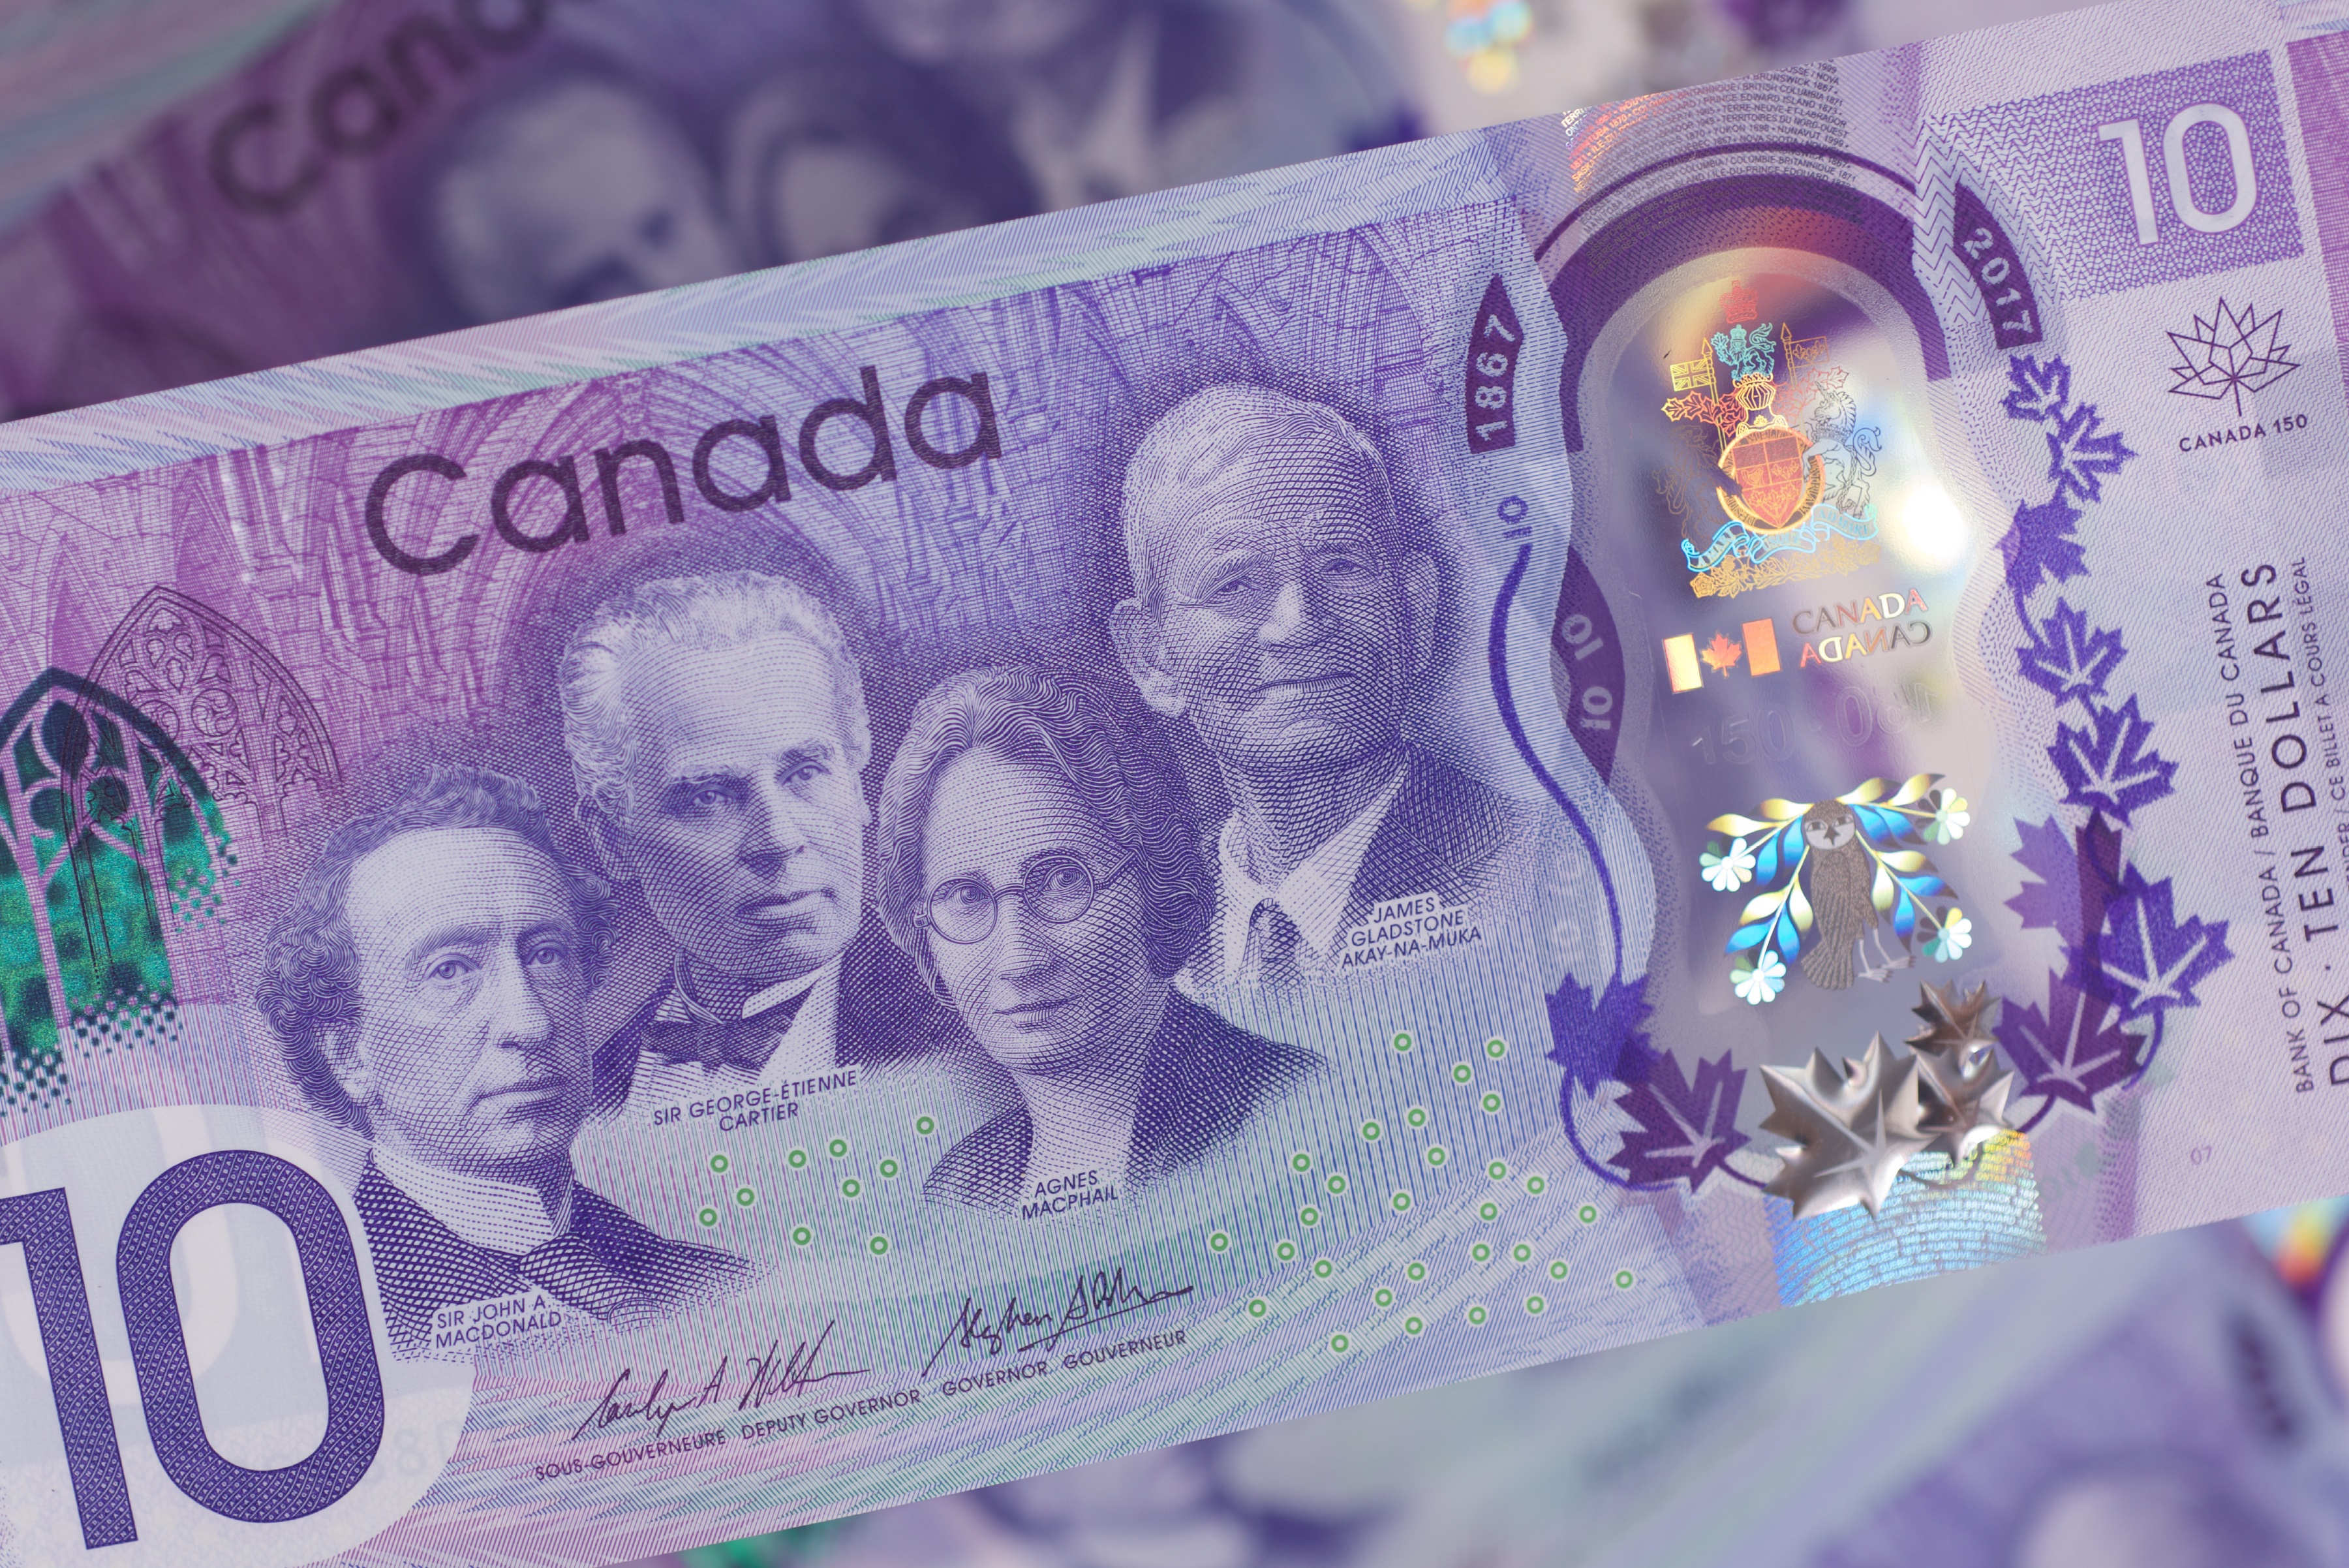 Ce nouveau billet de 10 $, émis en 2017 pour souligner le 150e anniversaire du Canada, montre sir John A. Macdonald, sir George-Étienne Cartier, Agnes Macphail et James Gladstone « Akay-na-muka ».